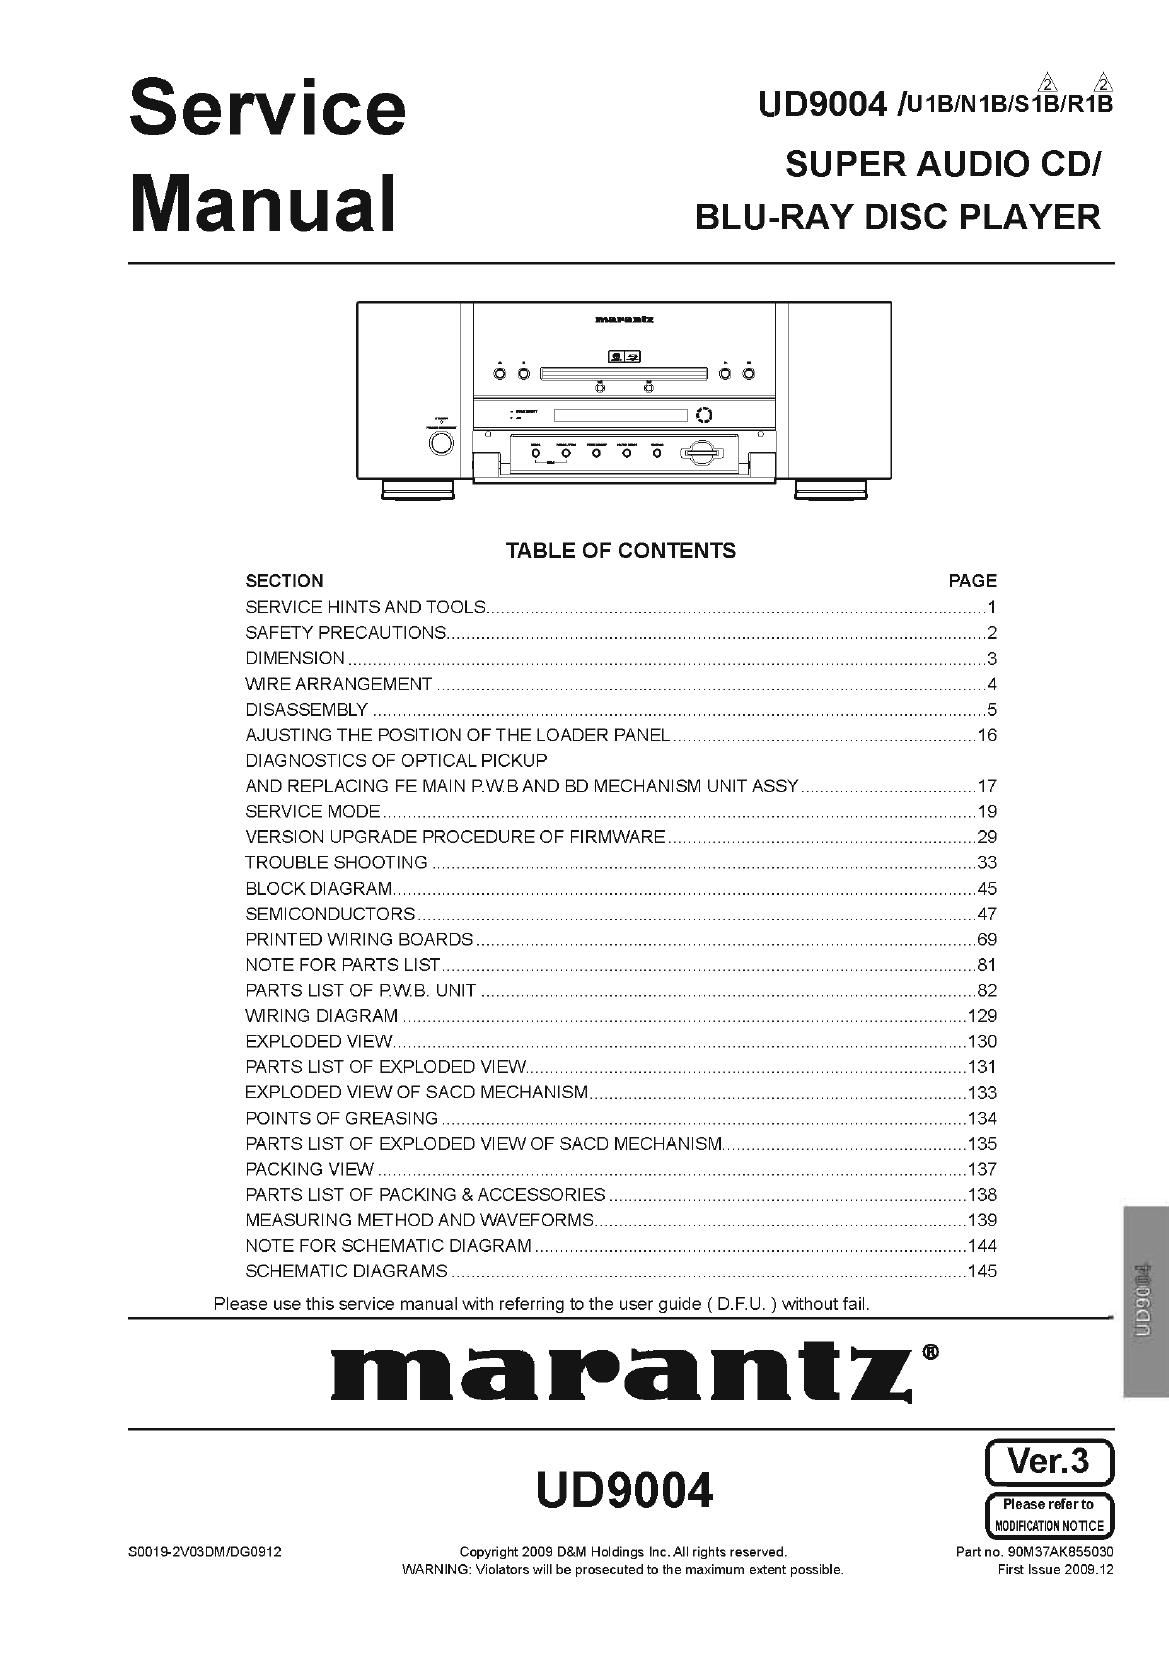 Marantz UD 9004 Service Manual